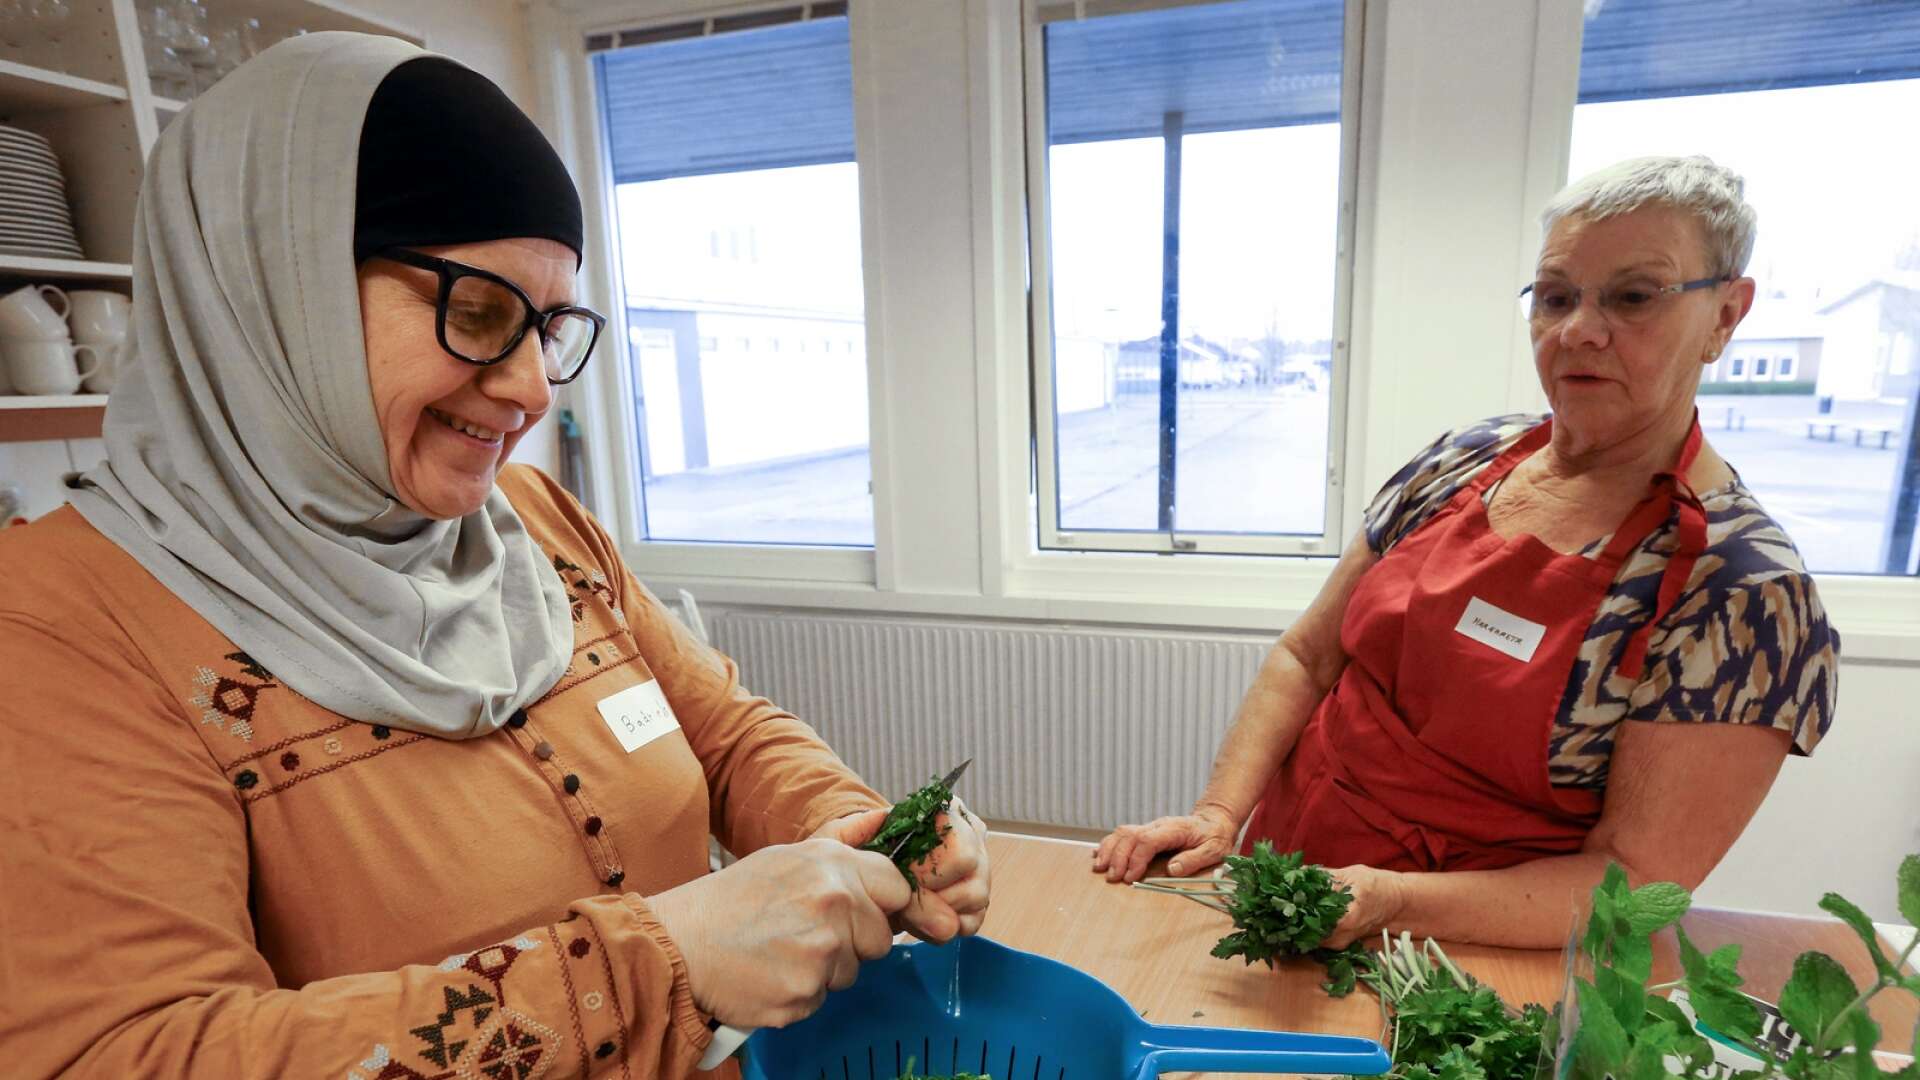 Matiga möten. Så heter projektet där nya svenskar och etablerade svenskar samlas för att laga mat tillsammans. Det är en förlängning av konceptet med kompismatchingar och här syns Sajeda och Margareta, som tidigare blivit matchade.